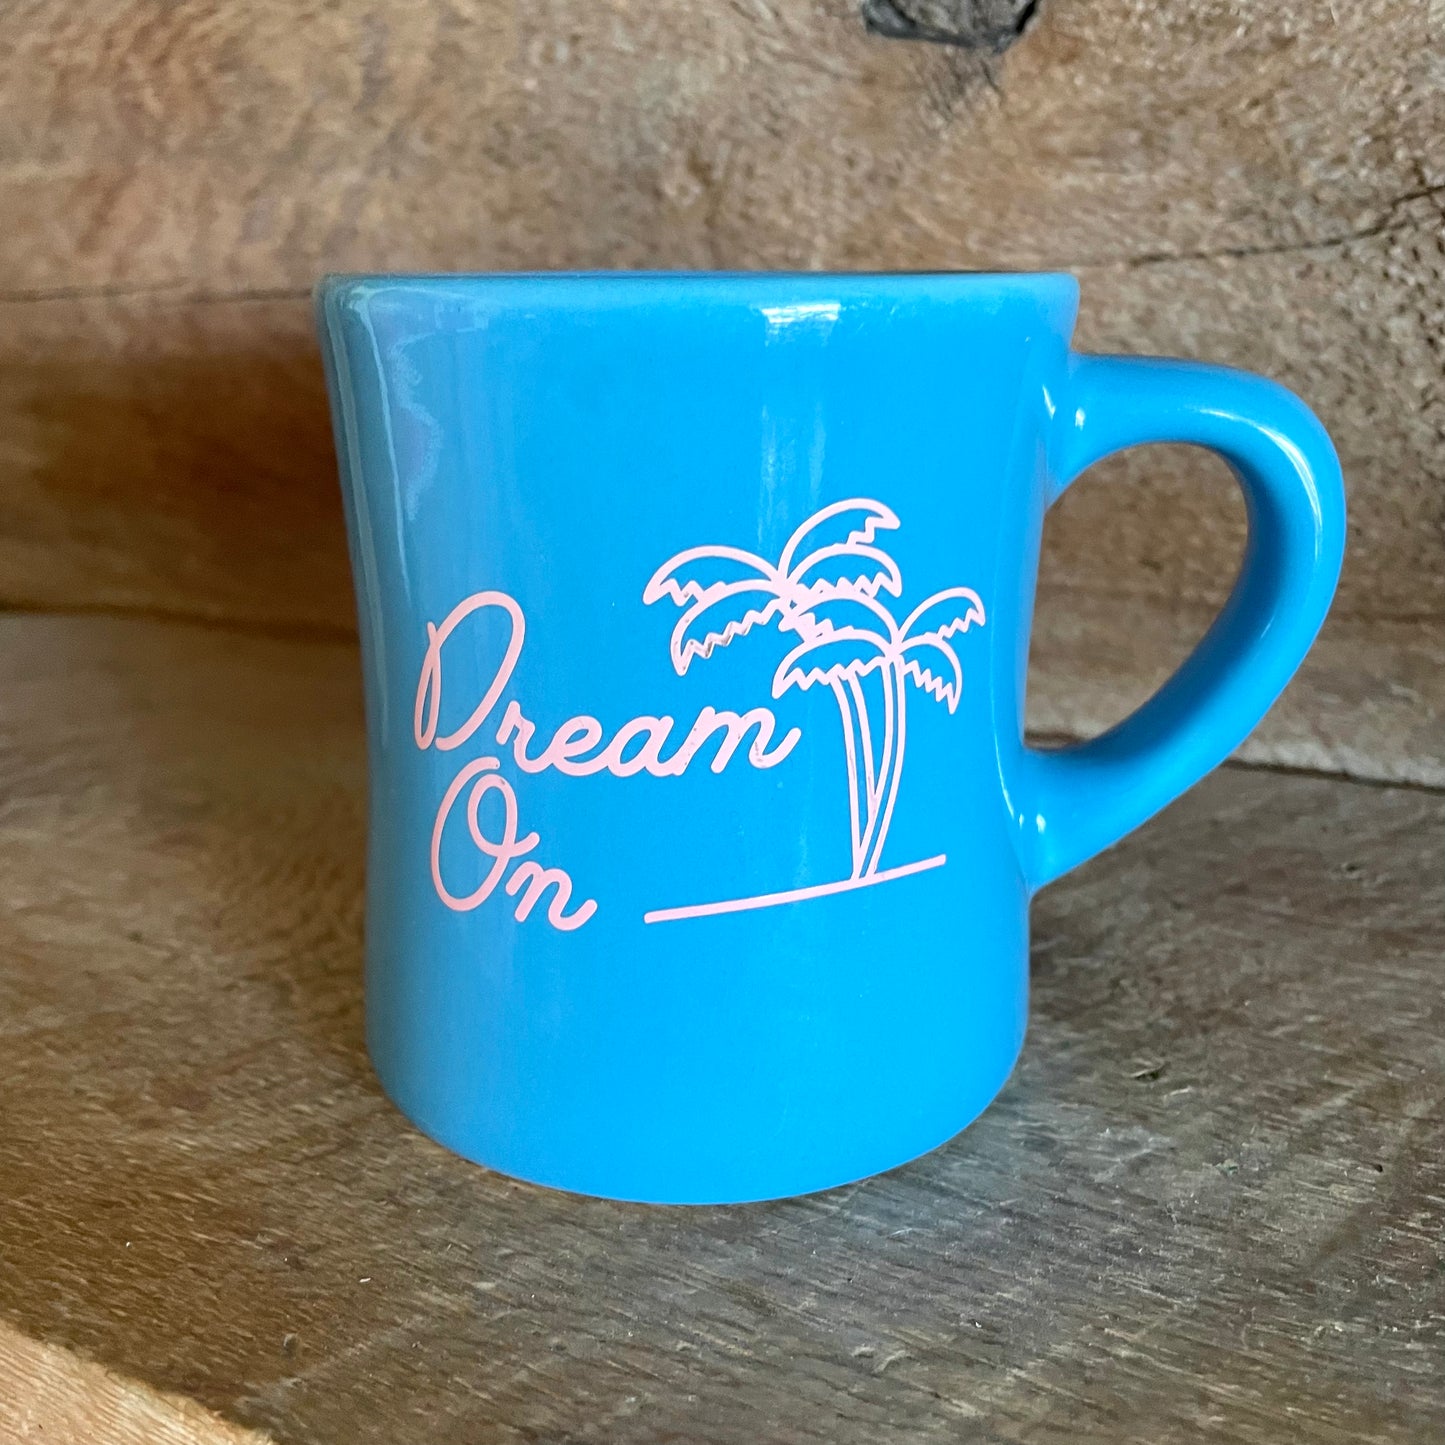 “Dream On” Vintage Mug